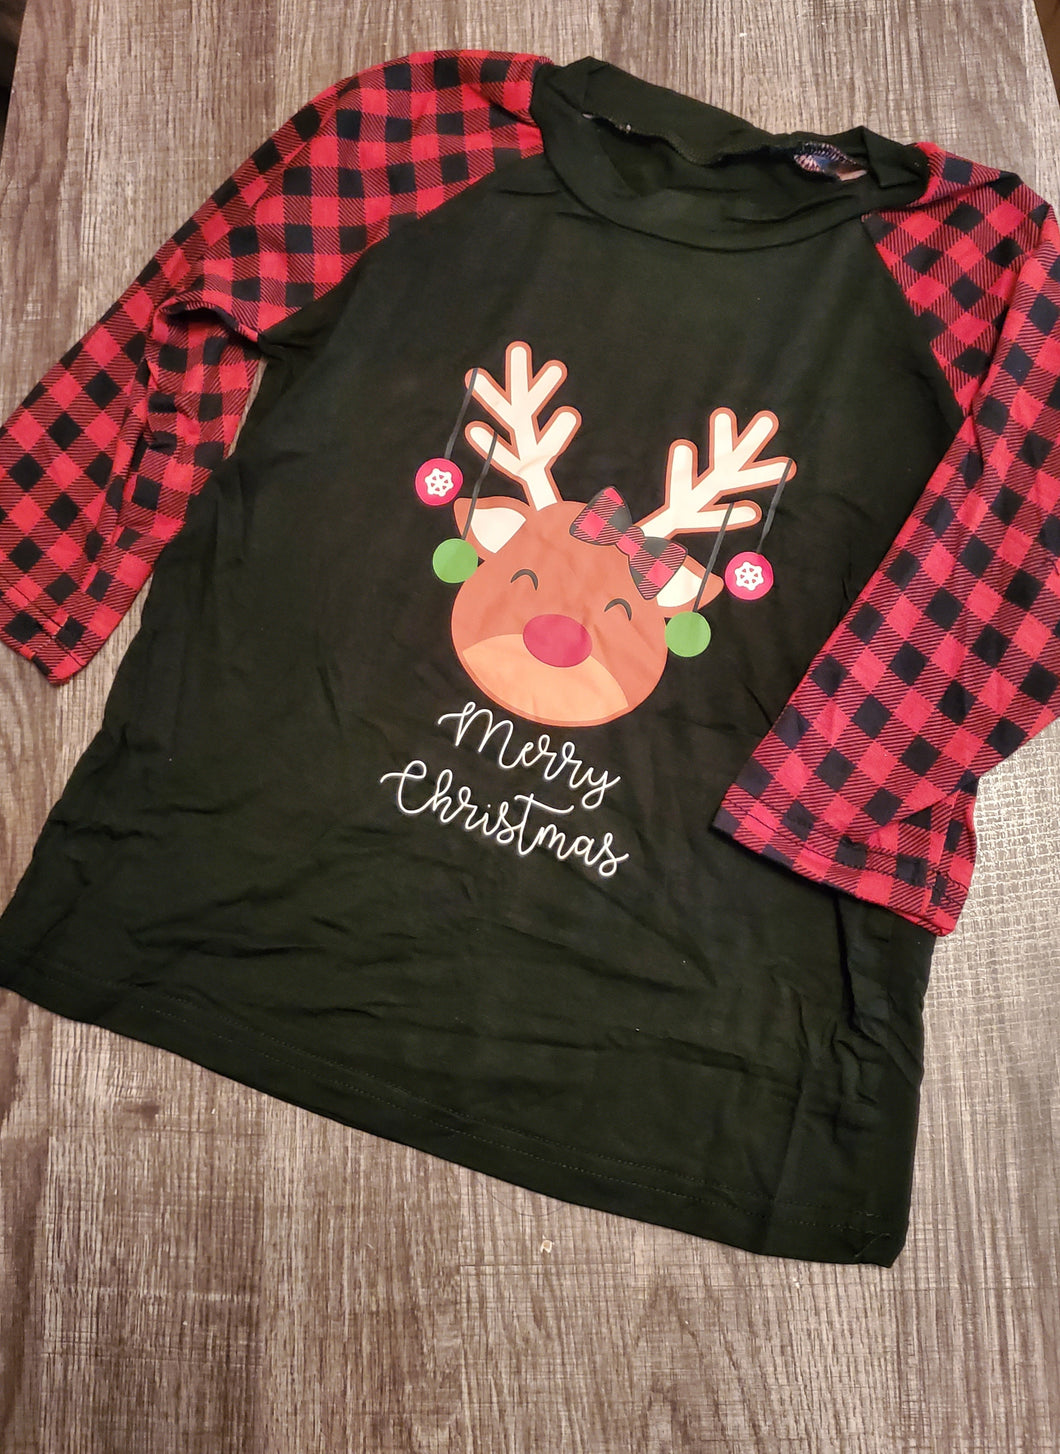 Reindeer Plaid Shirt